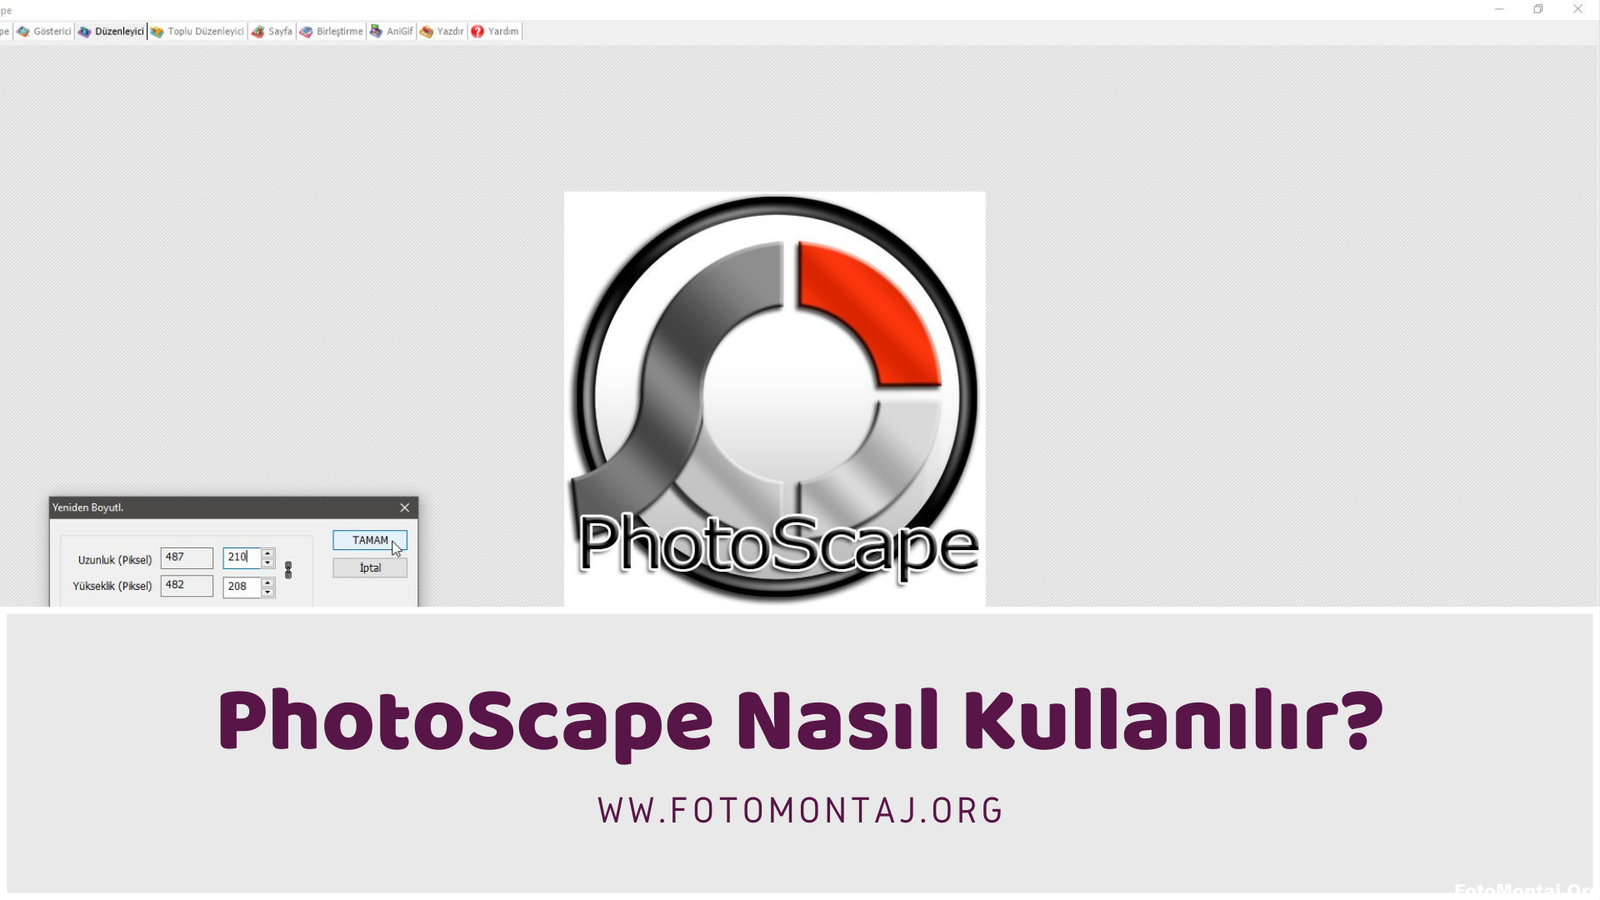 PhotoScape Nasıl Kullanılır?